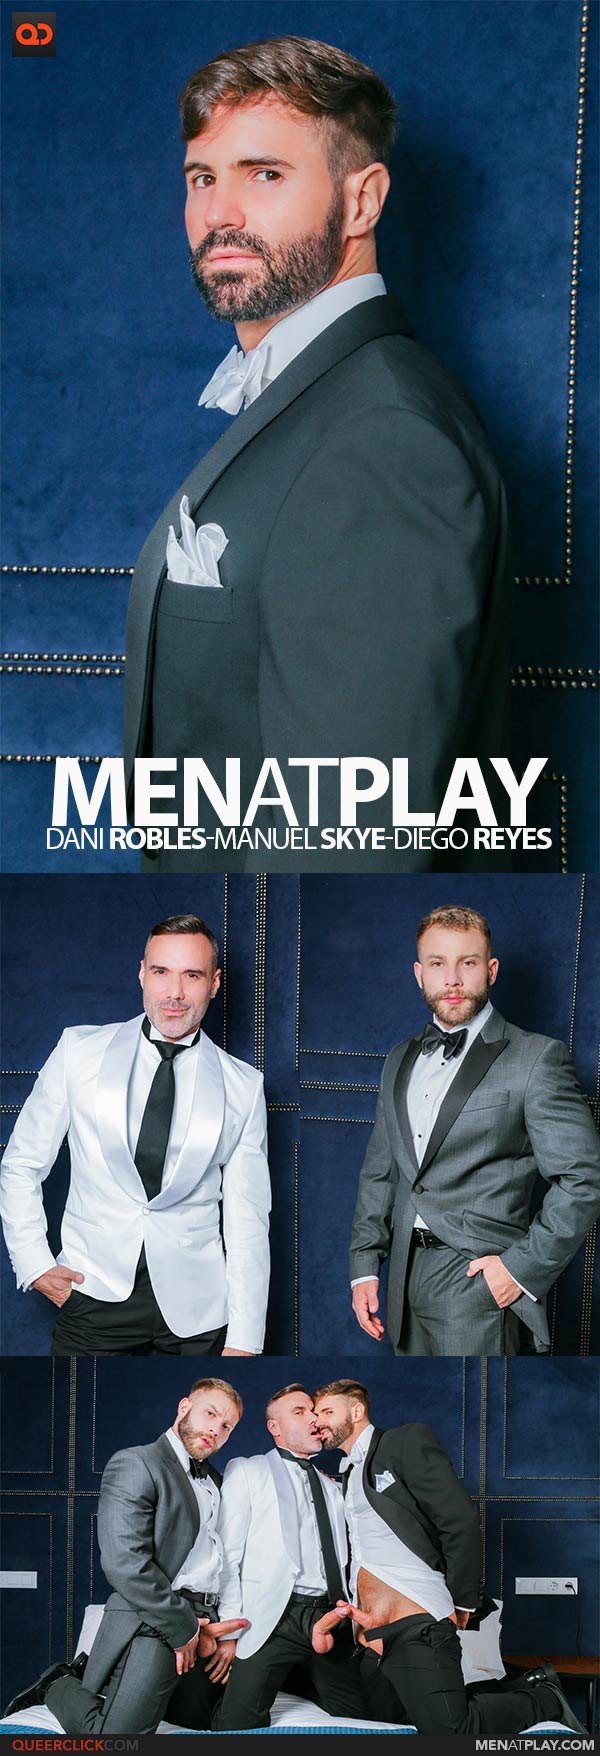 MenAtPlay: Diego Reyes, Dani Robles and Manuel Skye